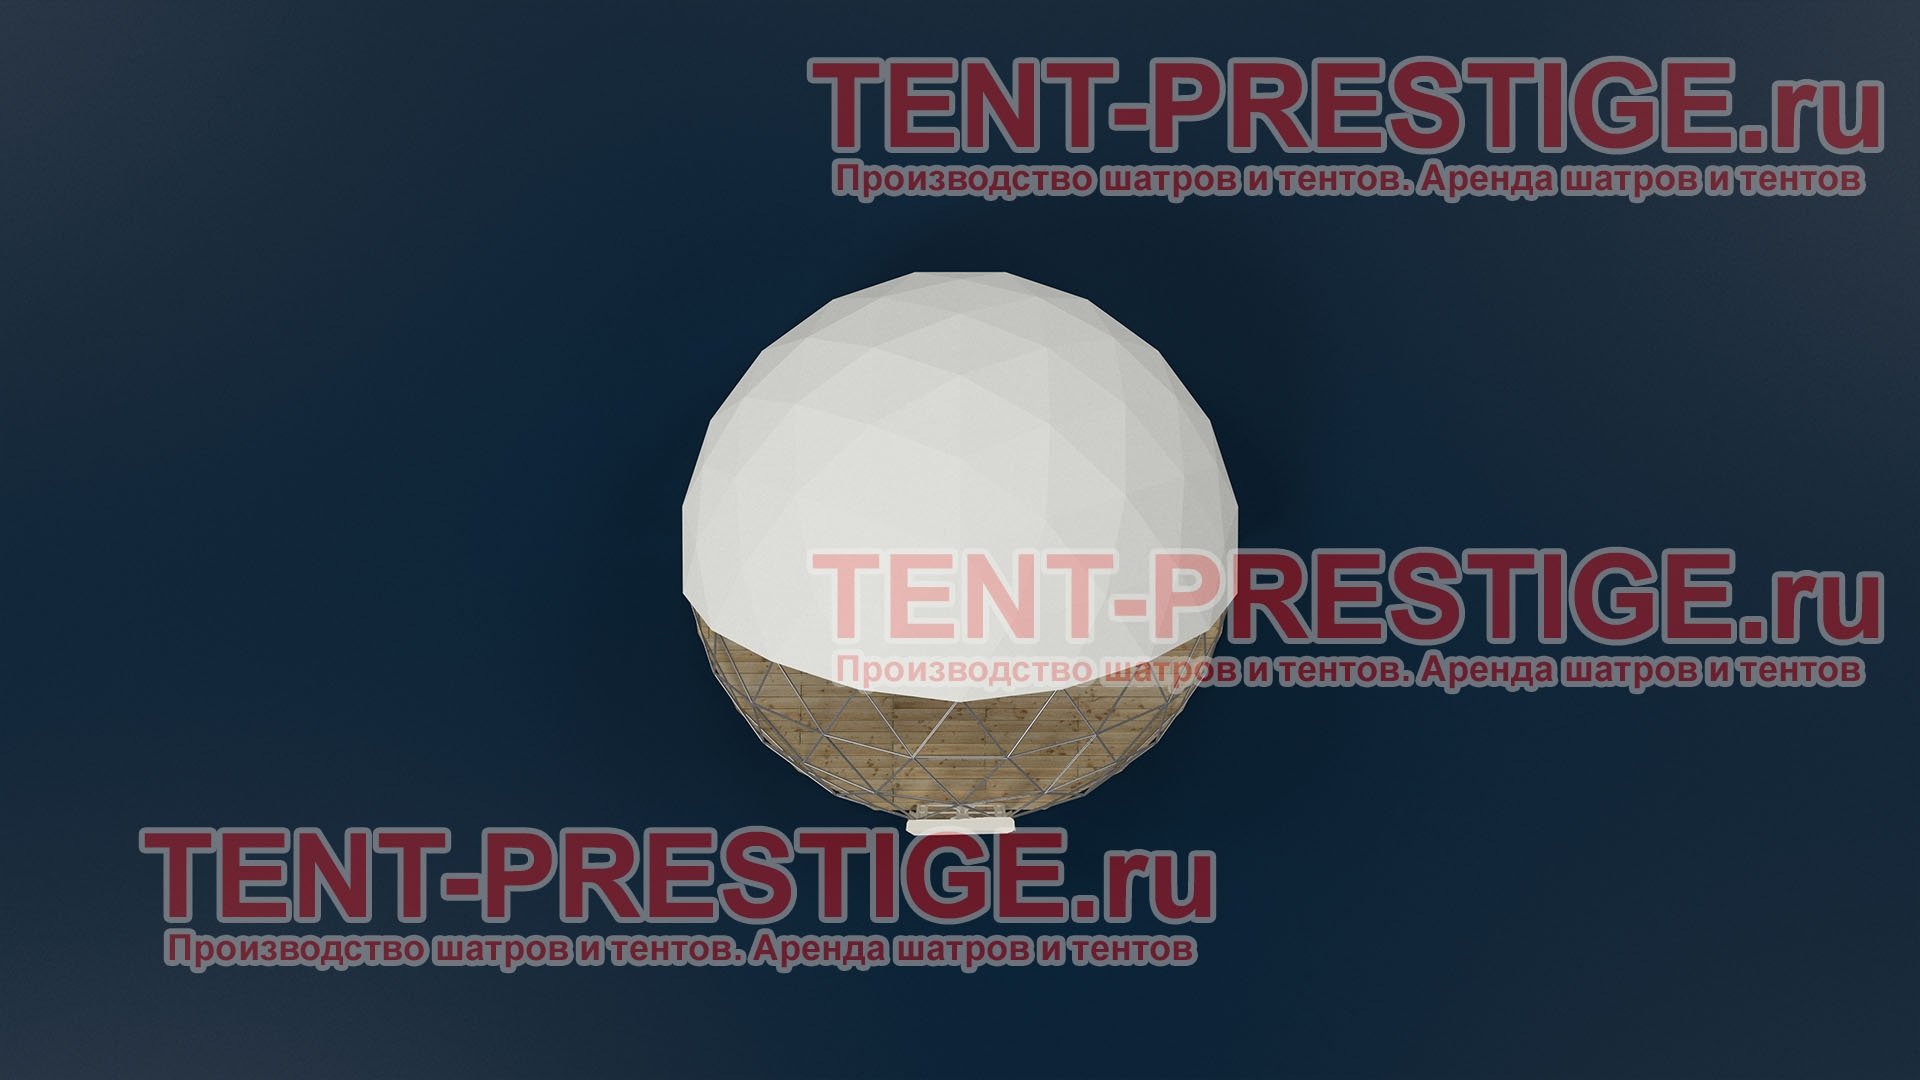 В аренду - Сферический шатер (Сфера) полупрозрачный диаметр 10 метров